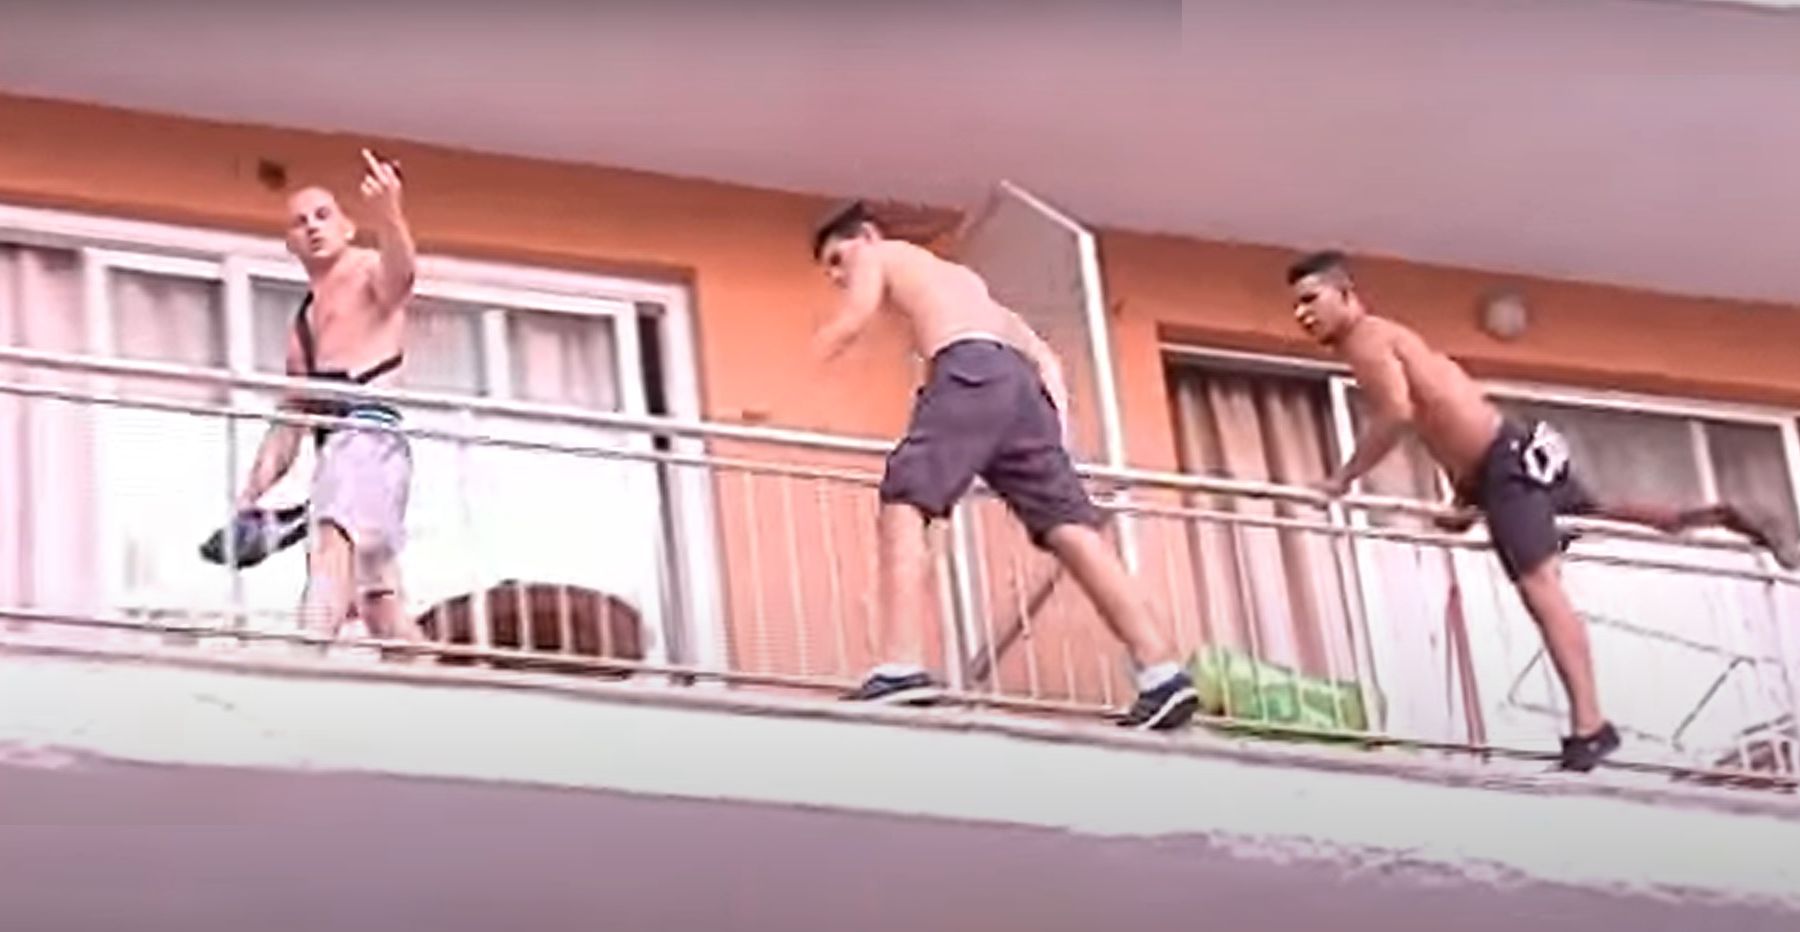 Tres turistas saltan de un balcón a otro en un hotel en Magaluf.